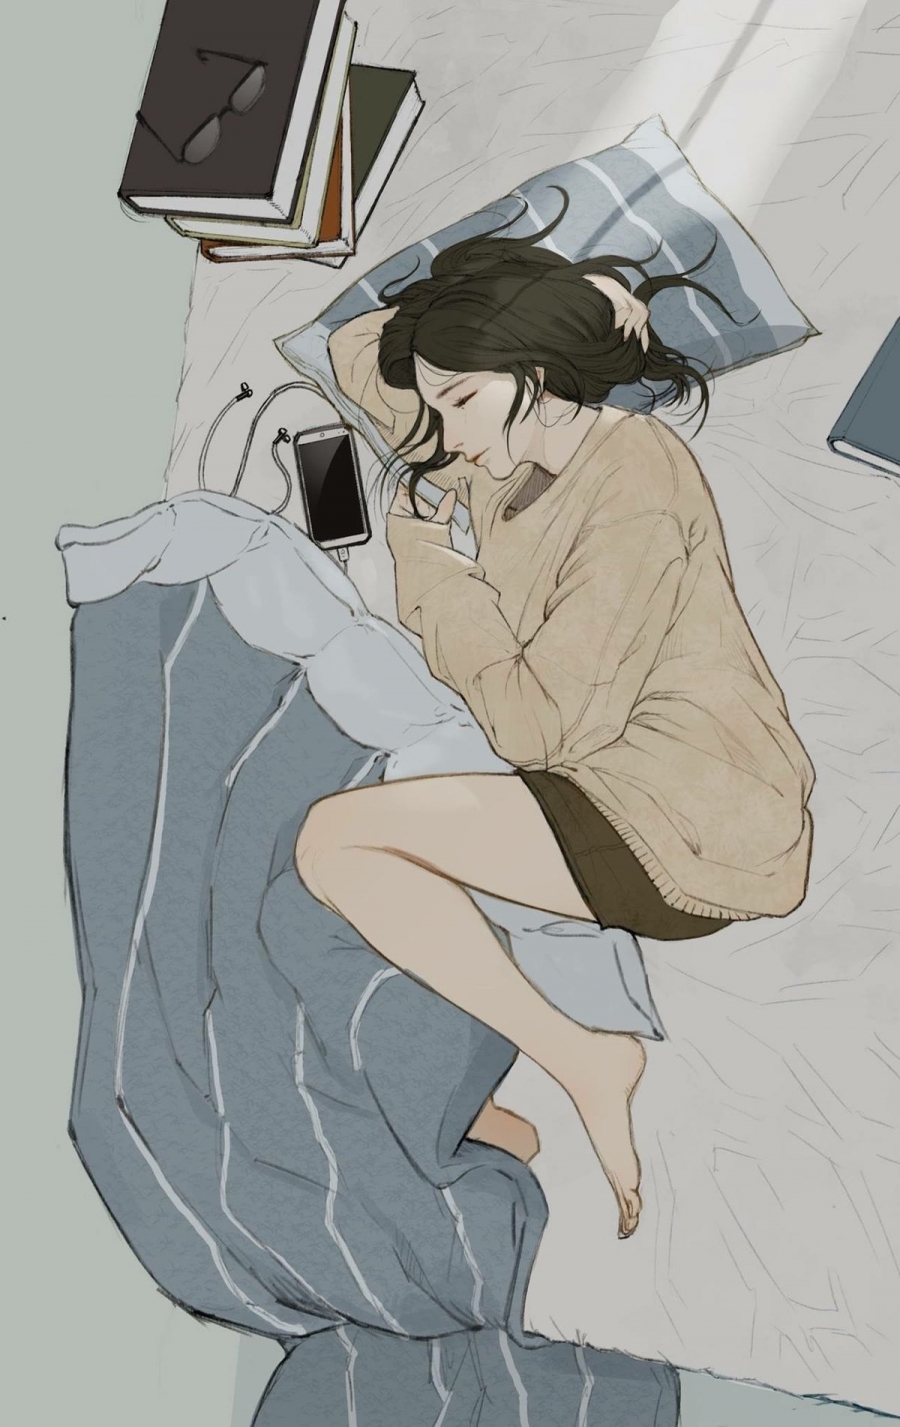 Đôi khi nghỉ ngơi trên chiếc giường quen thuộc là cách tốt nhất để giải quyết cảm xúc tiêu cực (Nguồn: Pinterest).